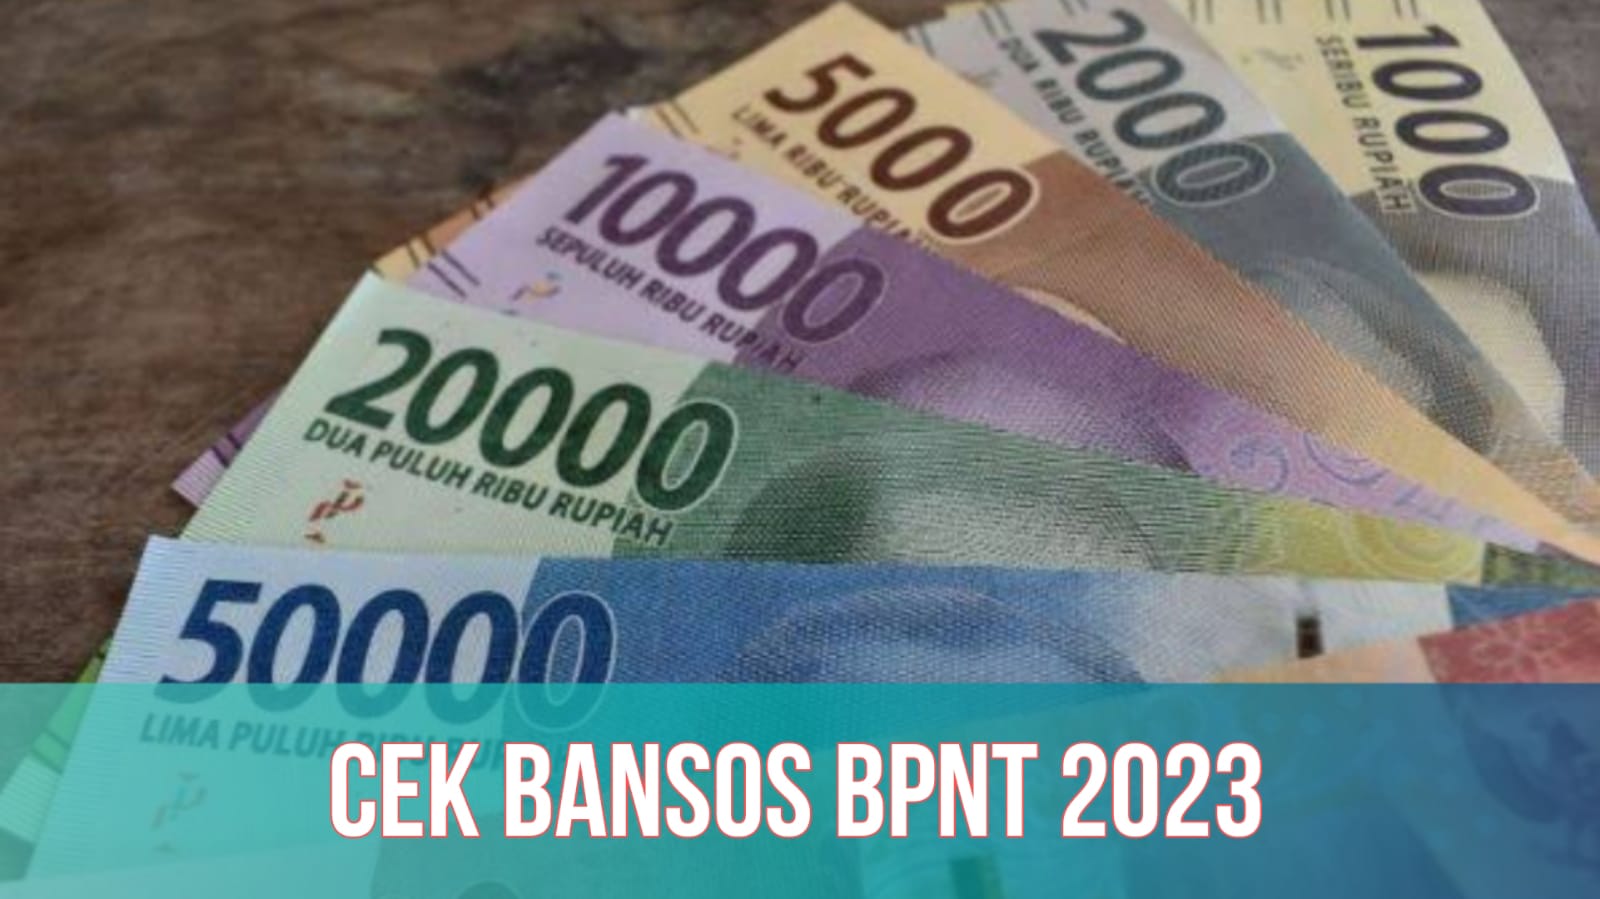 Jadwal Bansos BPNT 2023, Penerima Dapat Bantuan Rp400.000, Cek Segera!